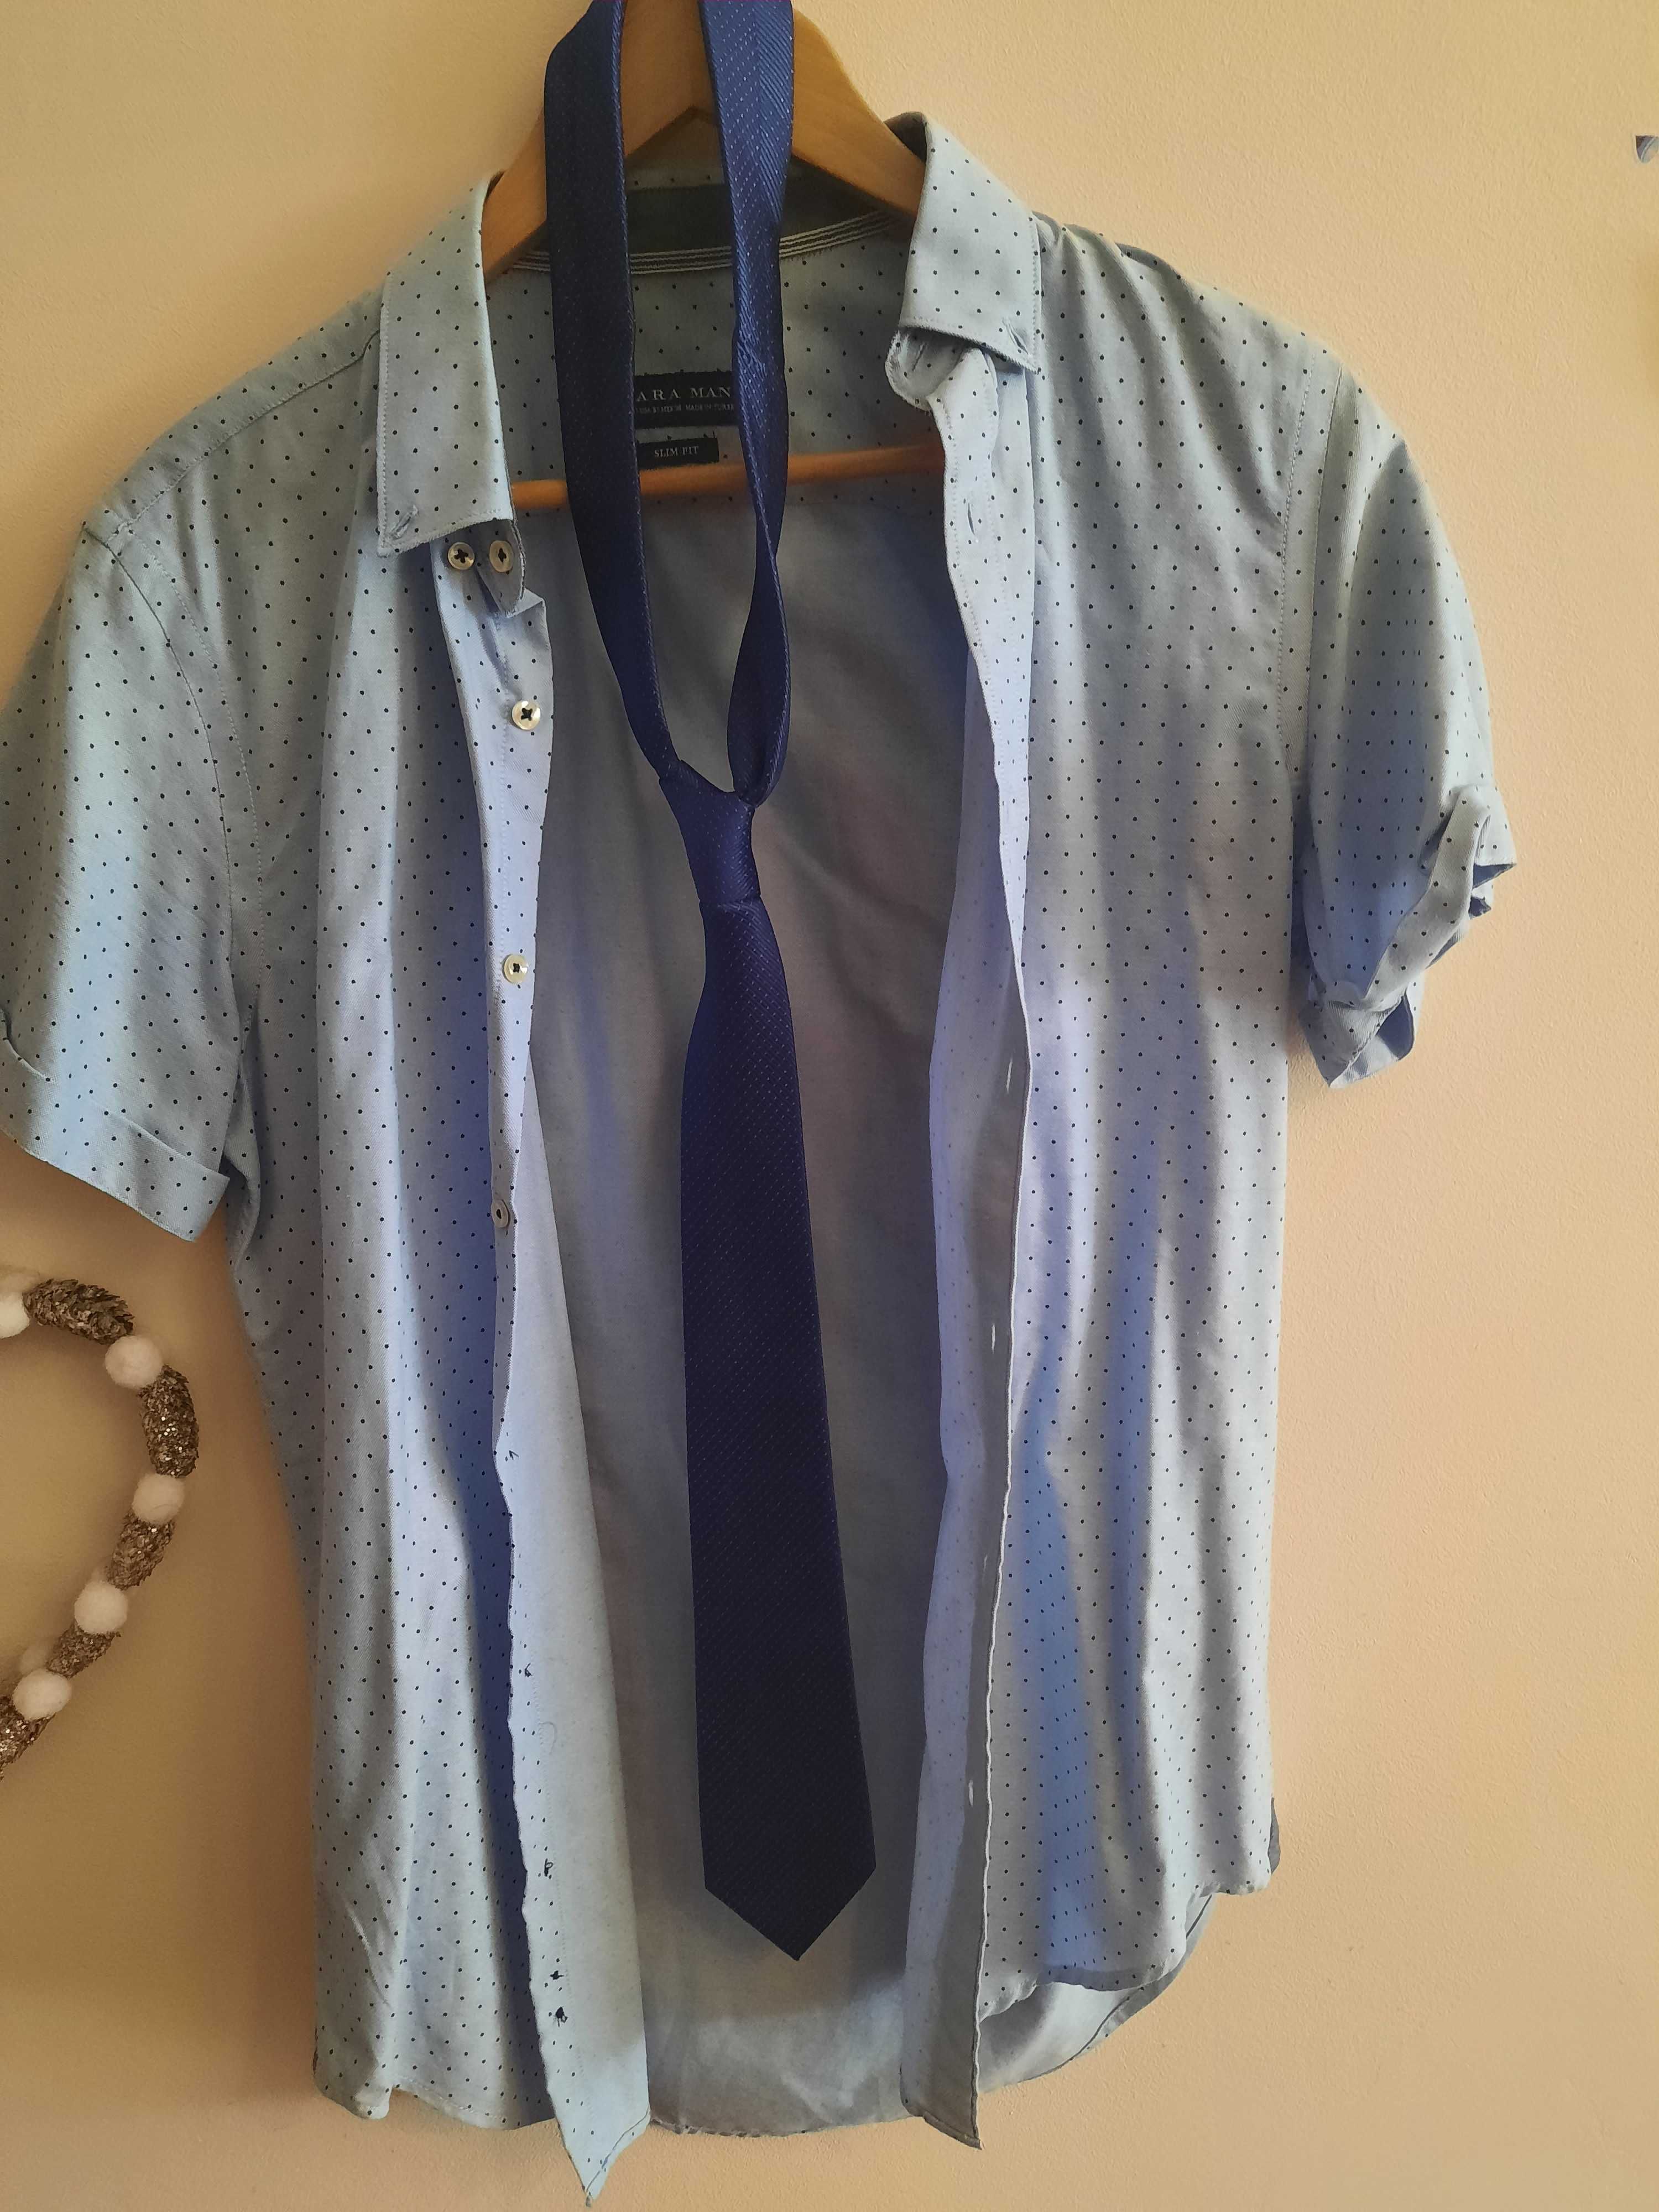 Fato homem completo + camisa +gravata